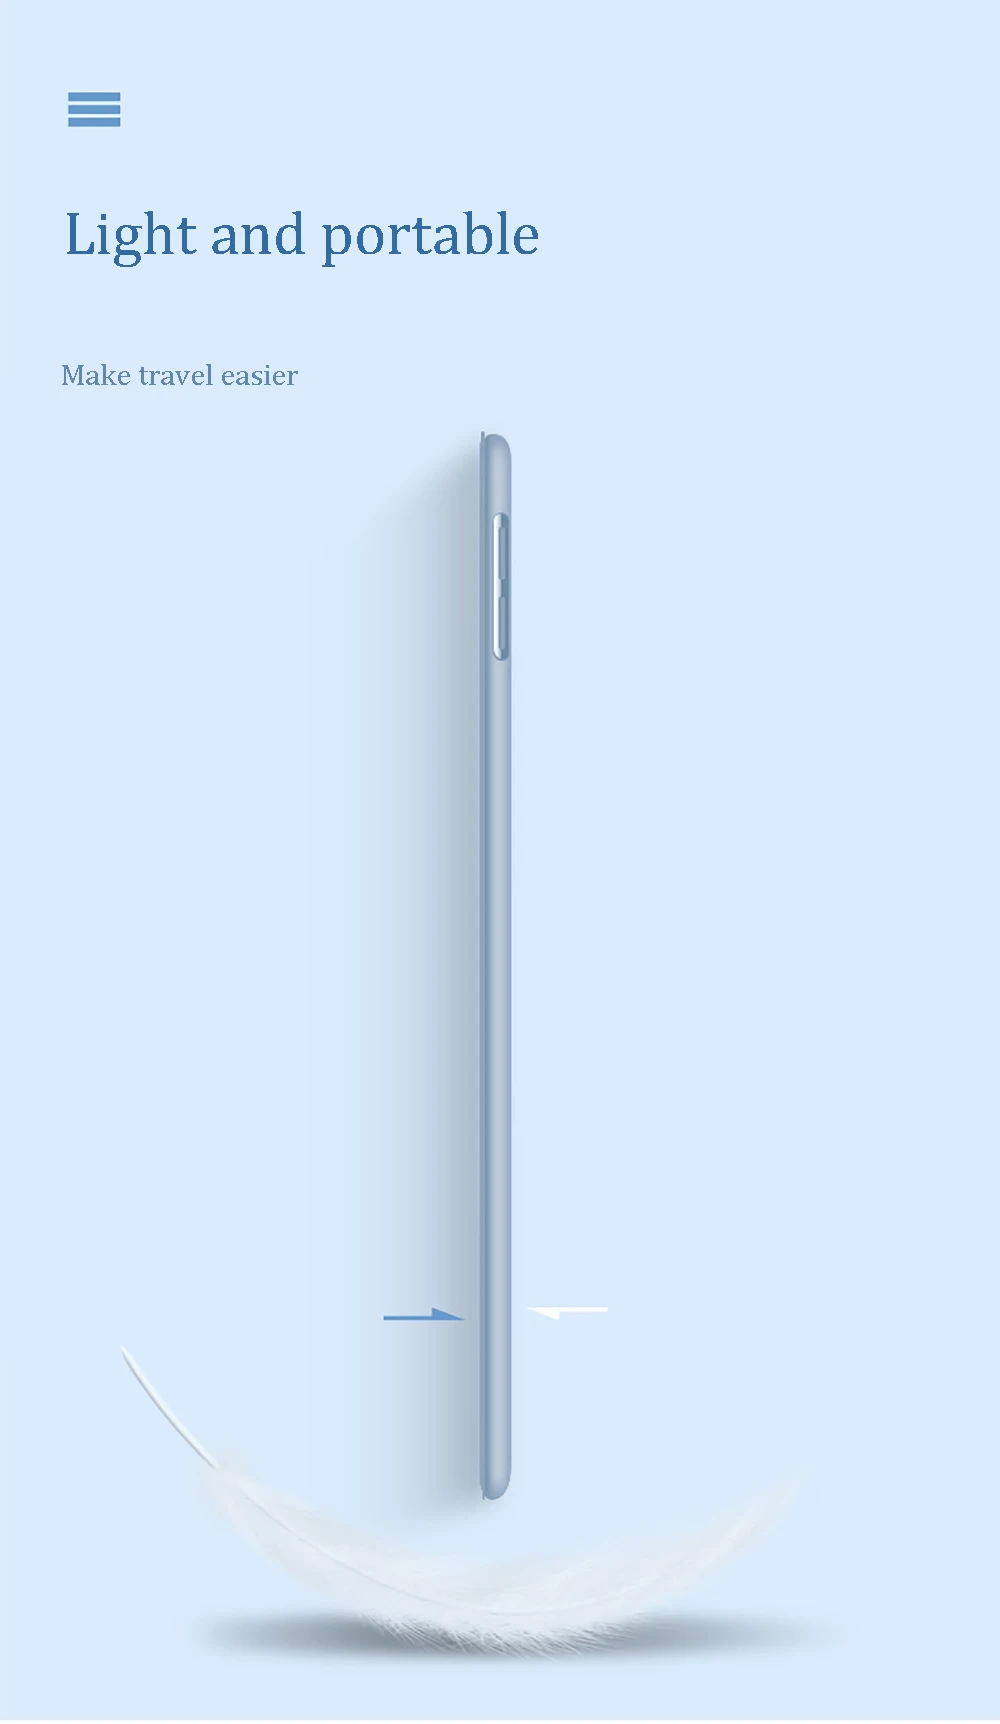 Чехол для нового iPad 9,7 дюйма, чехол с карандашом, умный чехол из искусственной кожи, мягкий силиконовый чехол для iPad 5th 6th A1822 A1954